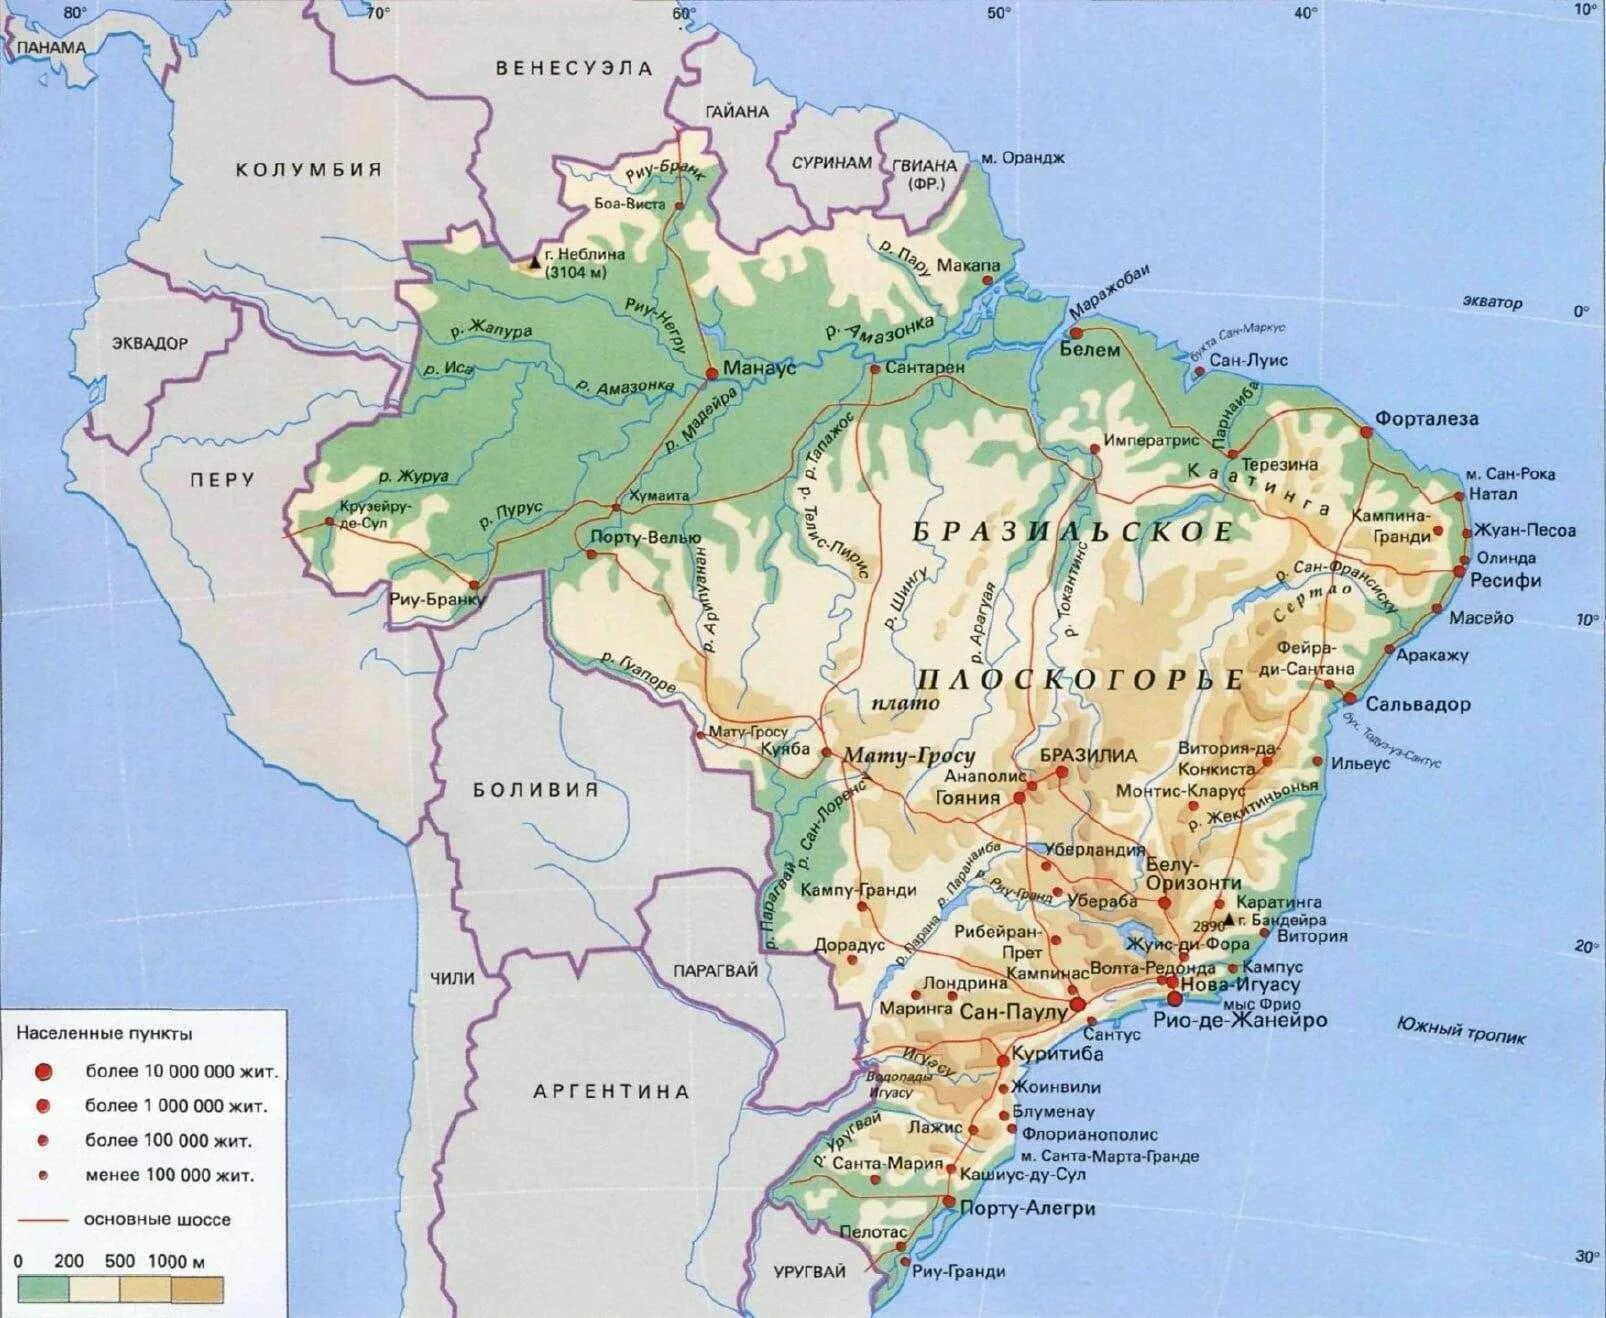 Амазонская низменность на карте Бразилии. Расположение Бразилии на карте. Бразильское плоскогорье на карте Южной Америки. Бразильское Нагорье на карте. Описание бразилии по географическим картам